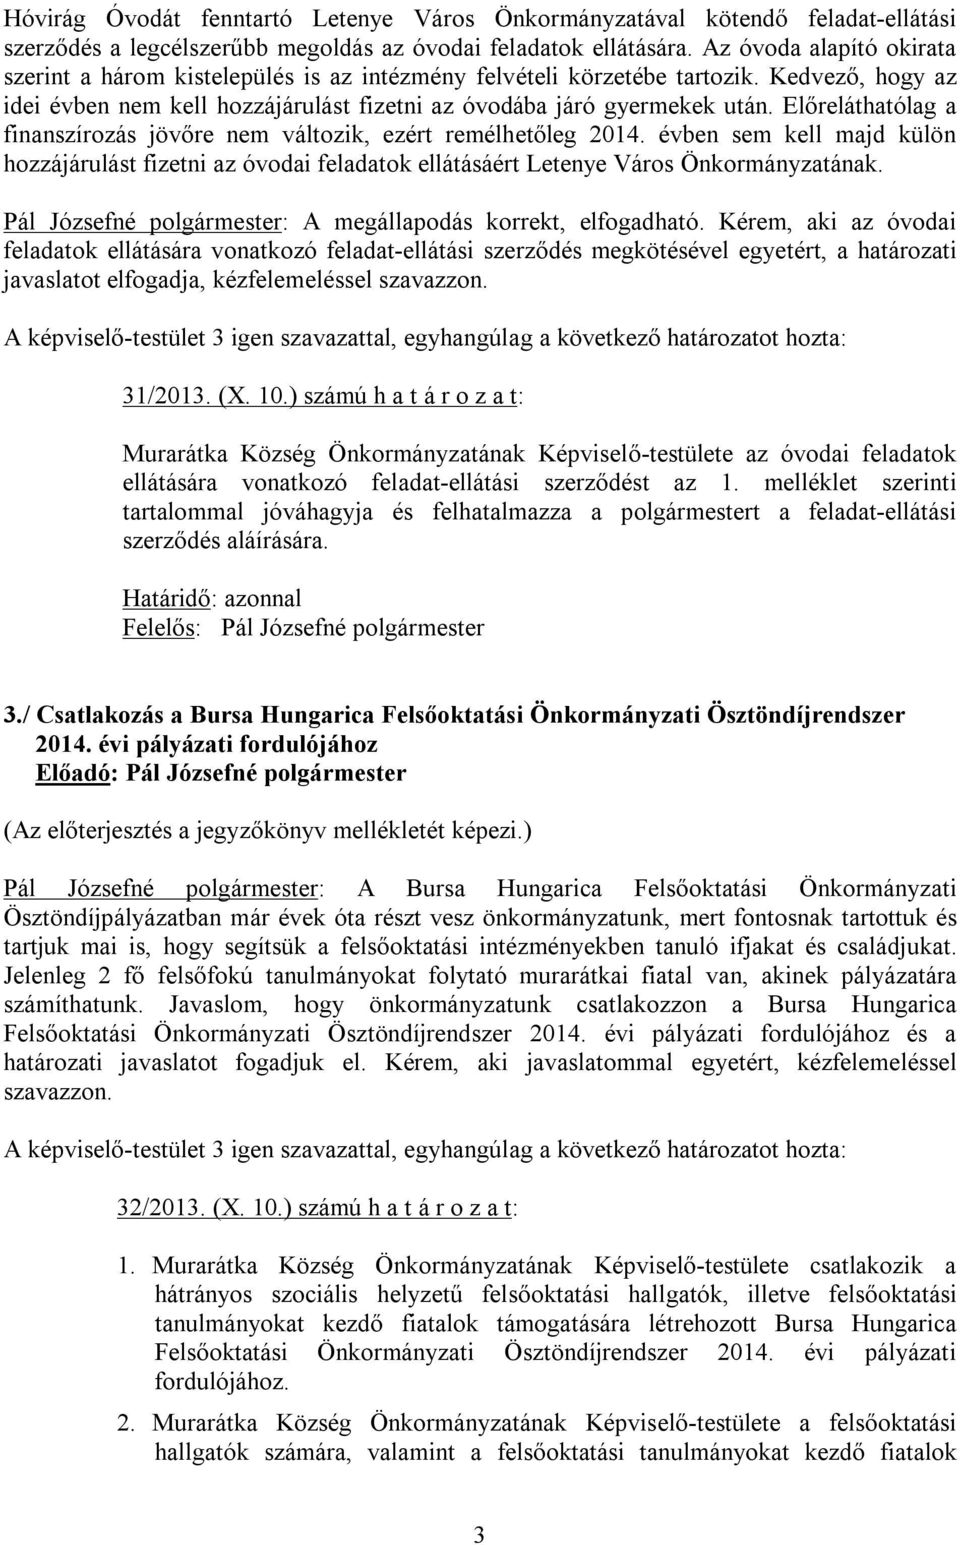 Előreláthatólag a finanszírozás jövőre nem változik, ezért remélhetőleg 2014. évben sem kell majd külön hozzájárulást fizetni az óvodai feladatok ellátásáért Letenye Város Önkormányzatának.